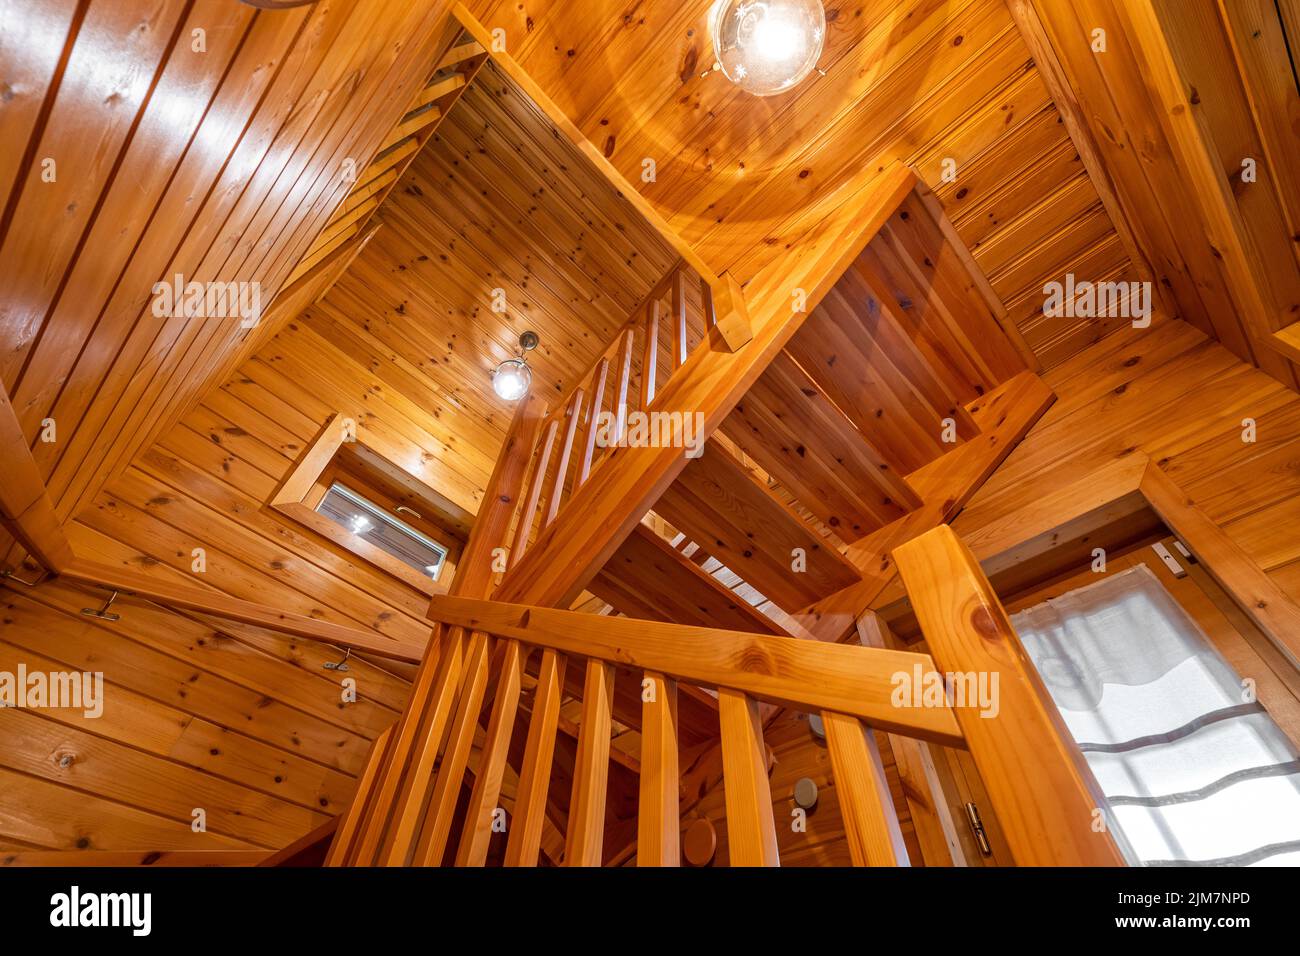 Vue de bas en haut d'un escalier en bois avec garde-corps dans une maison de campagne. Atmosphère chaleureuse de la maison de campagne Banque D'Images